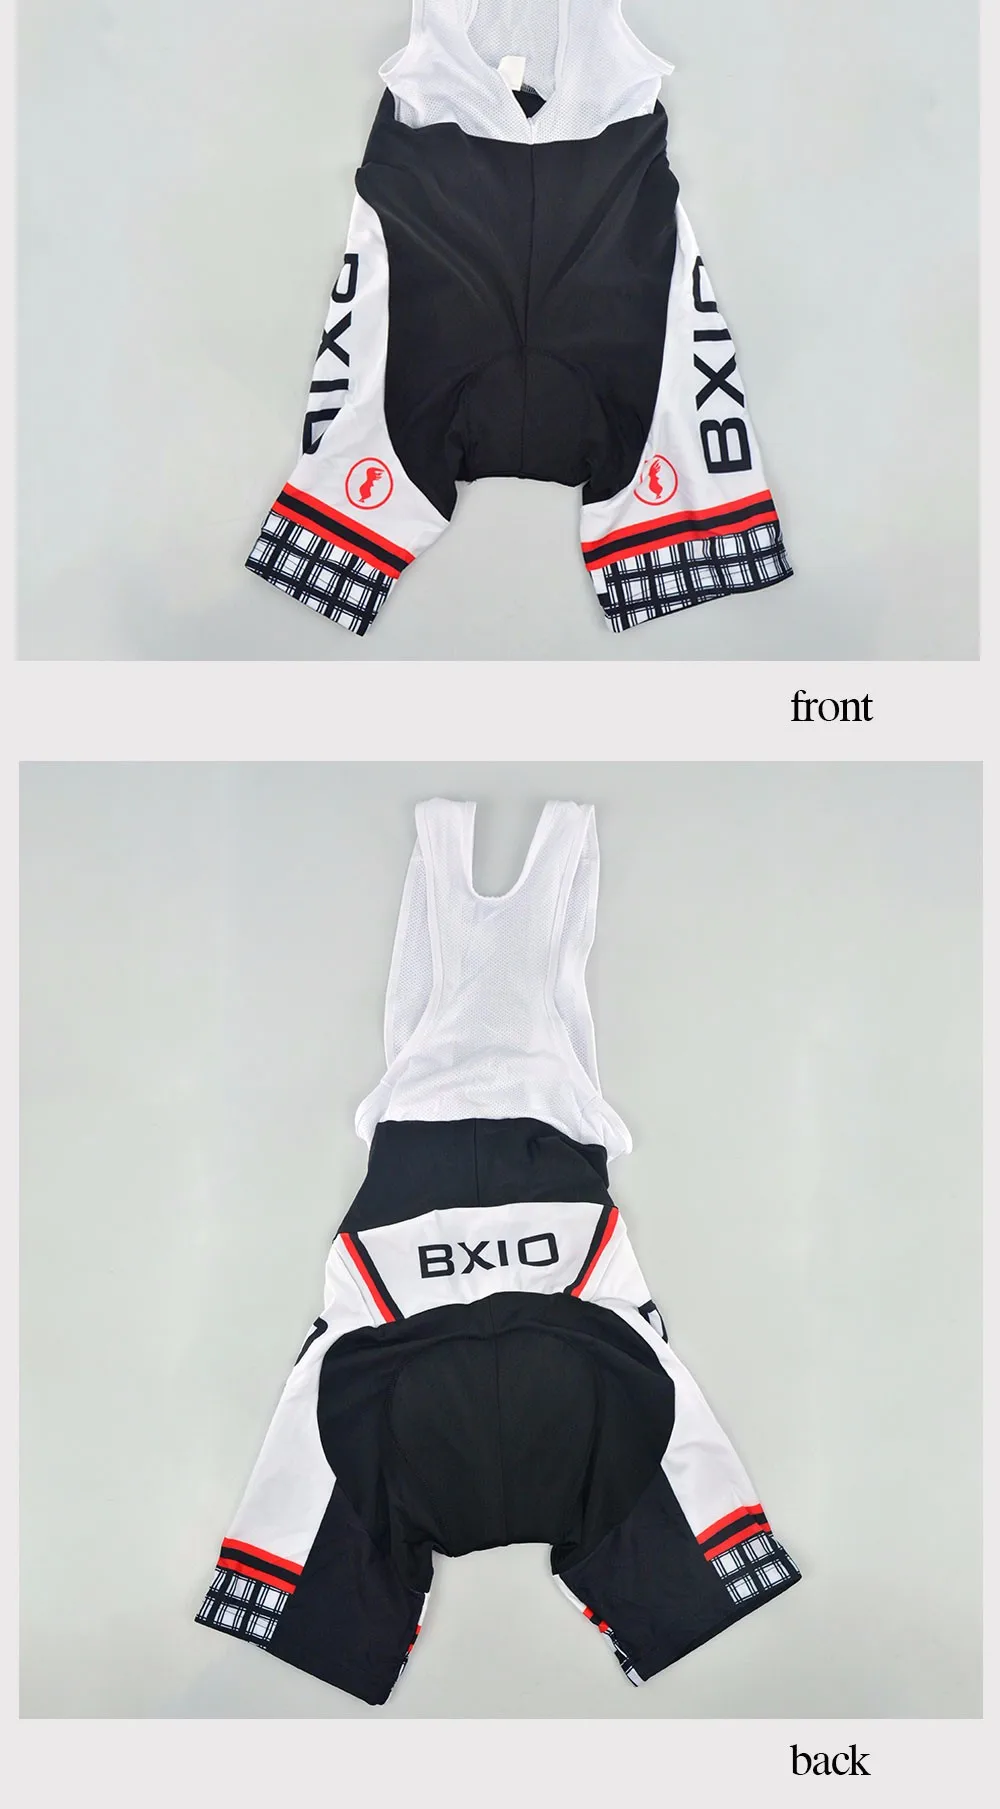 Bxio Прохладный Велонаборы дышащий Открытый Для мужчин Pro цикла Майки Рубашка с короткими рукавами Велосипедный Спорт одежда Дышащие quipacion